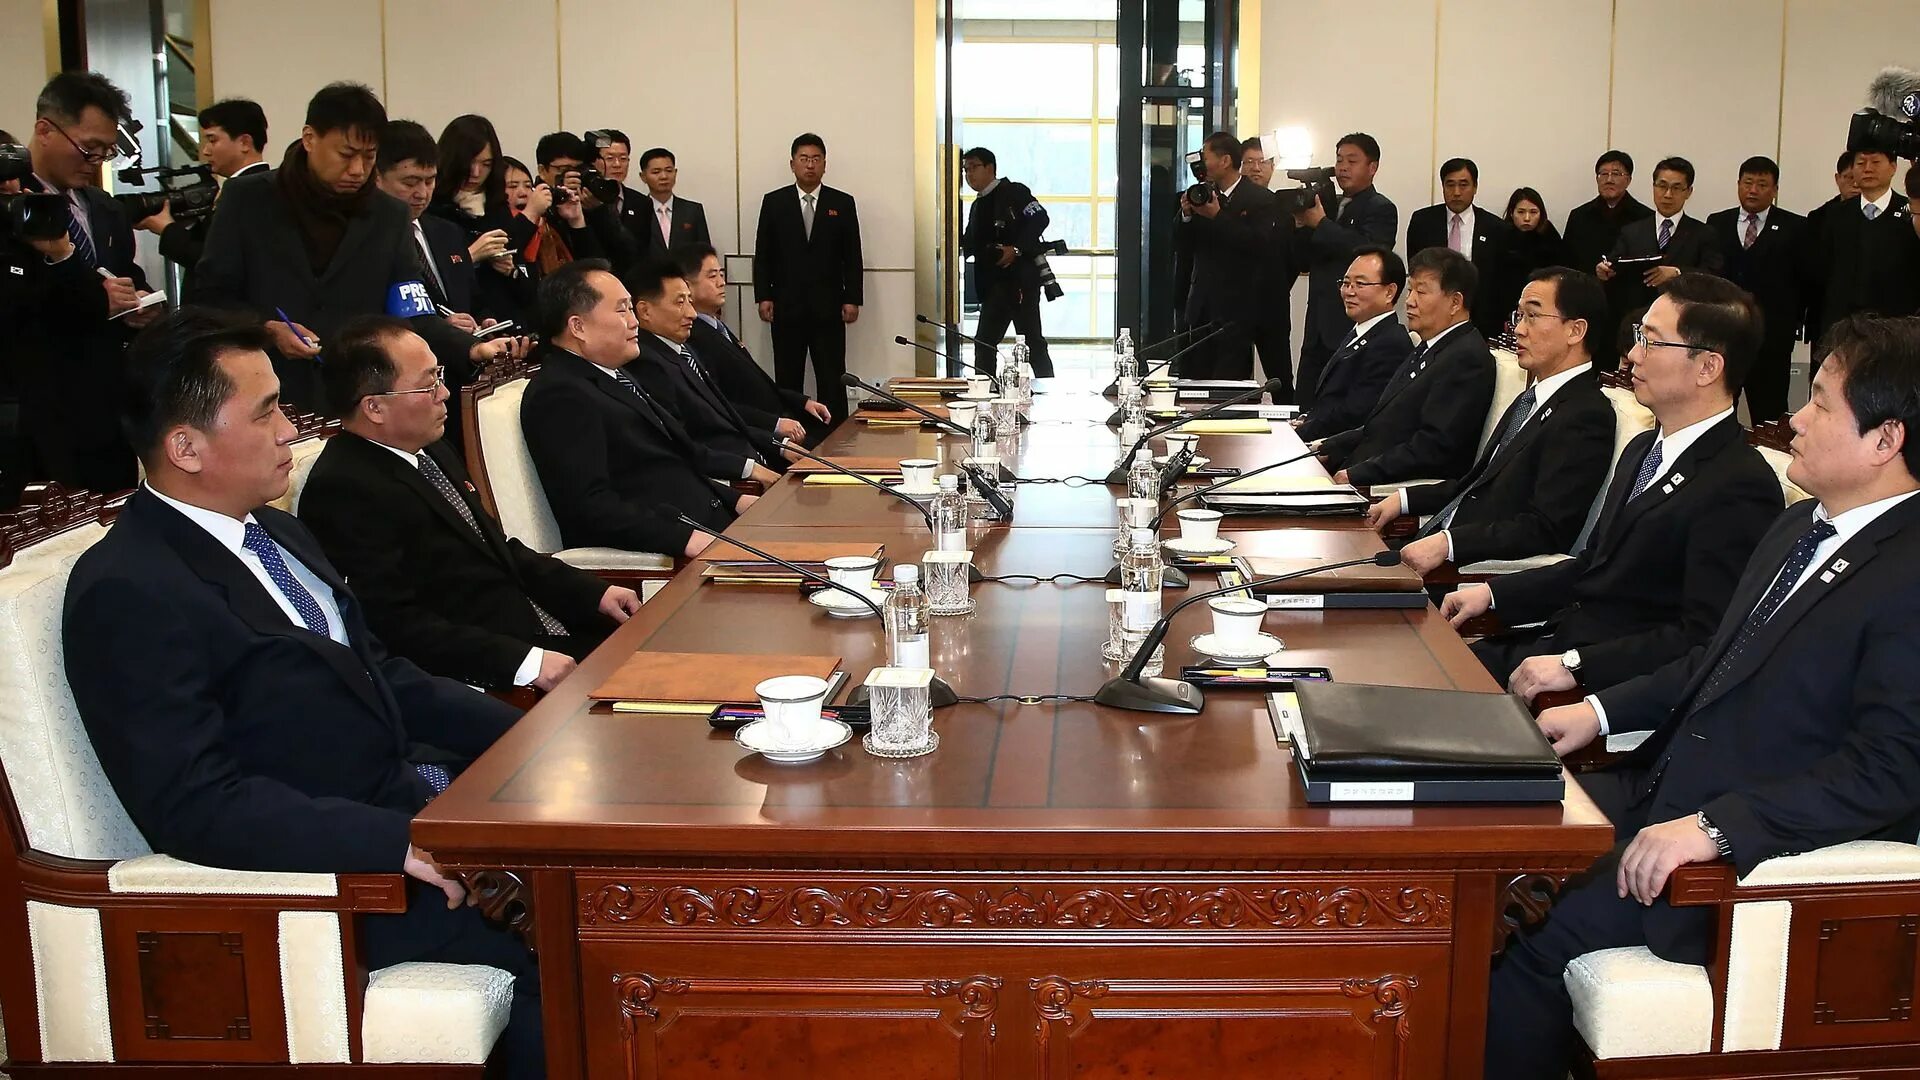 Мэрия южной кореи новости. Правительство Южной Кореи. Южная Корея правление. Кабинет министров Южной Кореи. The Negotiation 2018 Корея.